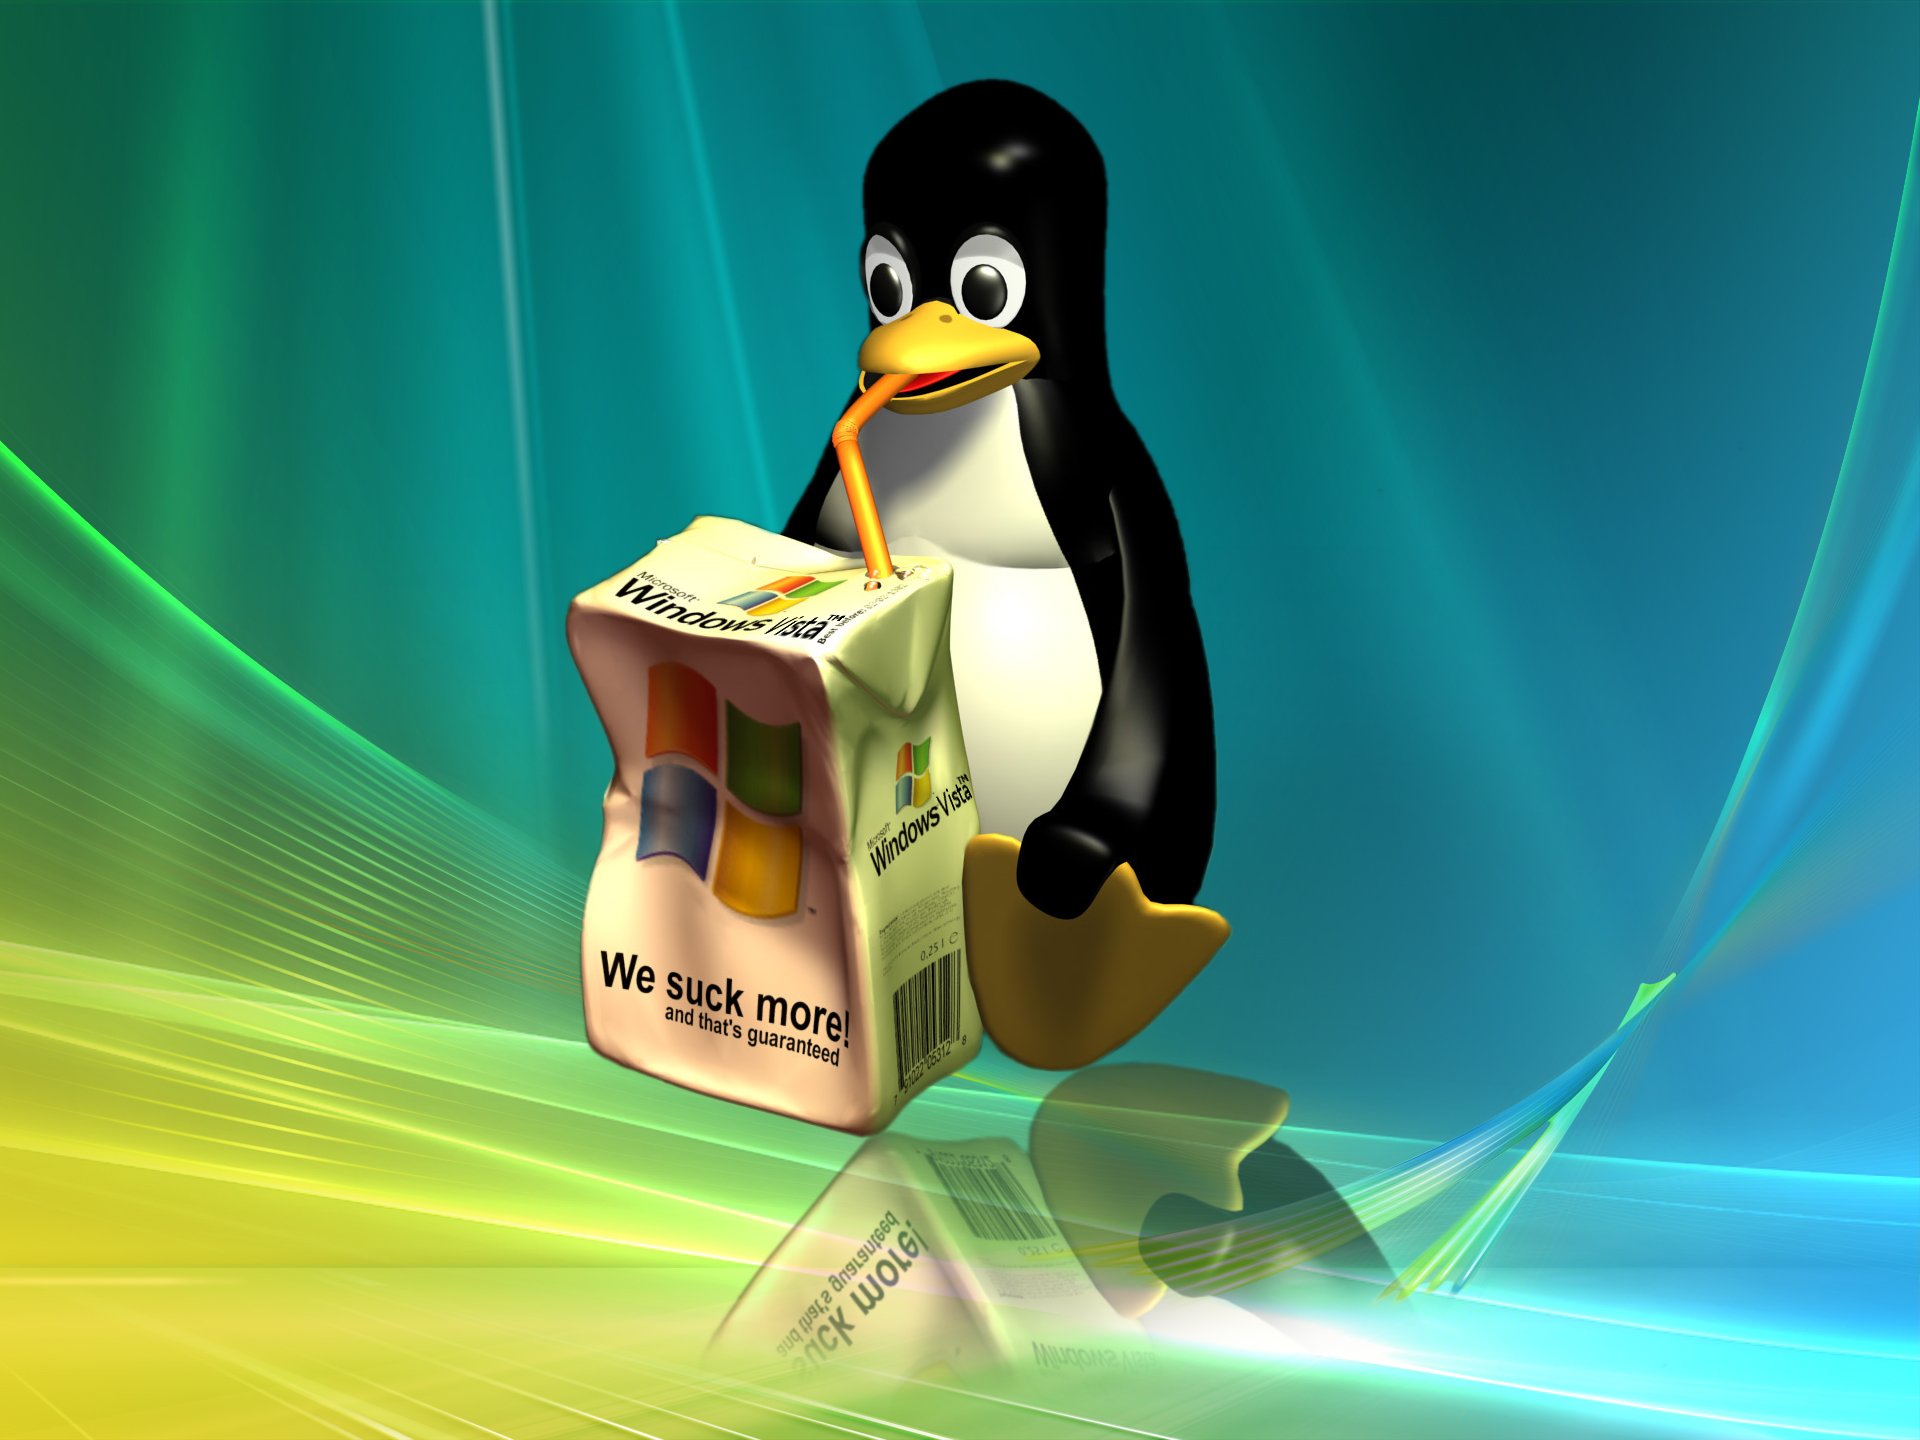 Hình nền máy tính Linux độc đáo, đa dạng với nhiều phong cách sáng tạo sẽ khiến desktop của bạn trở nên cuốn hút hơn bao giờ hết.